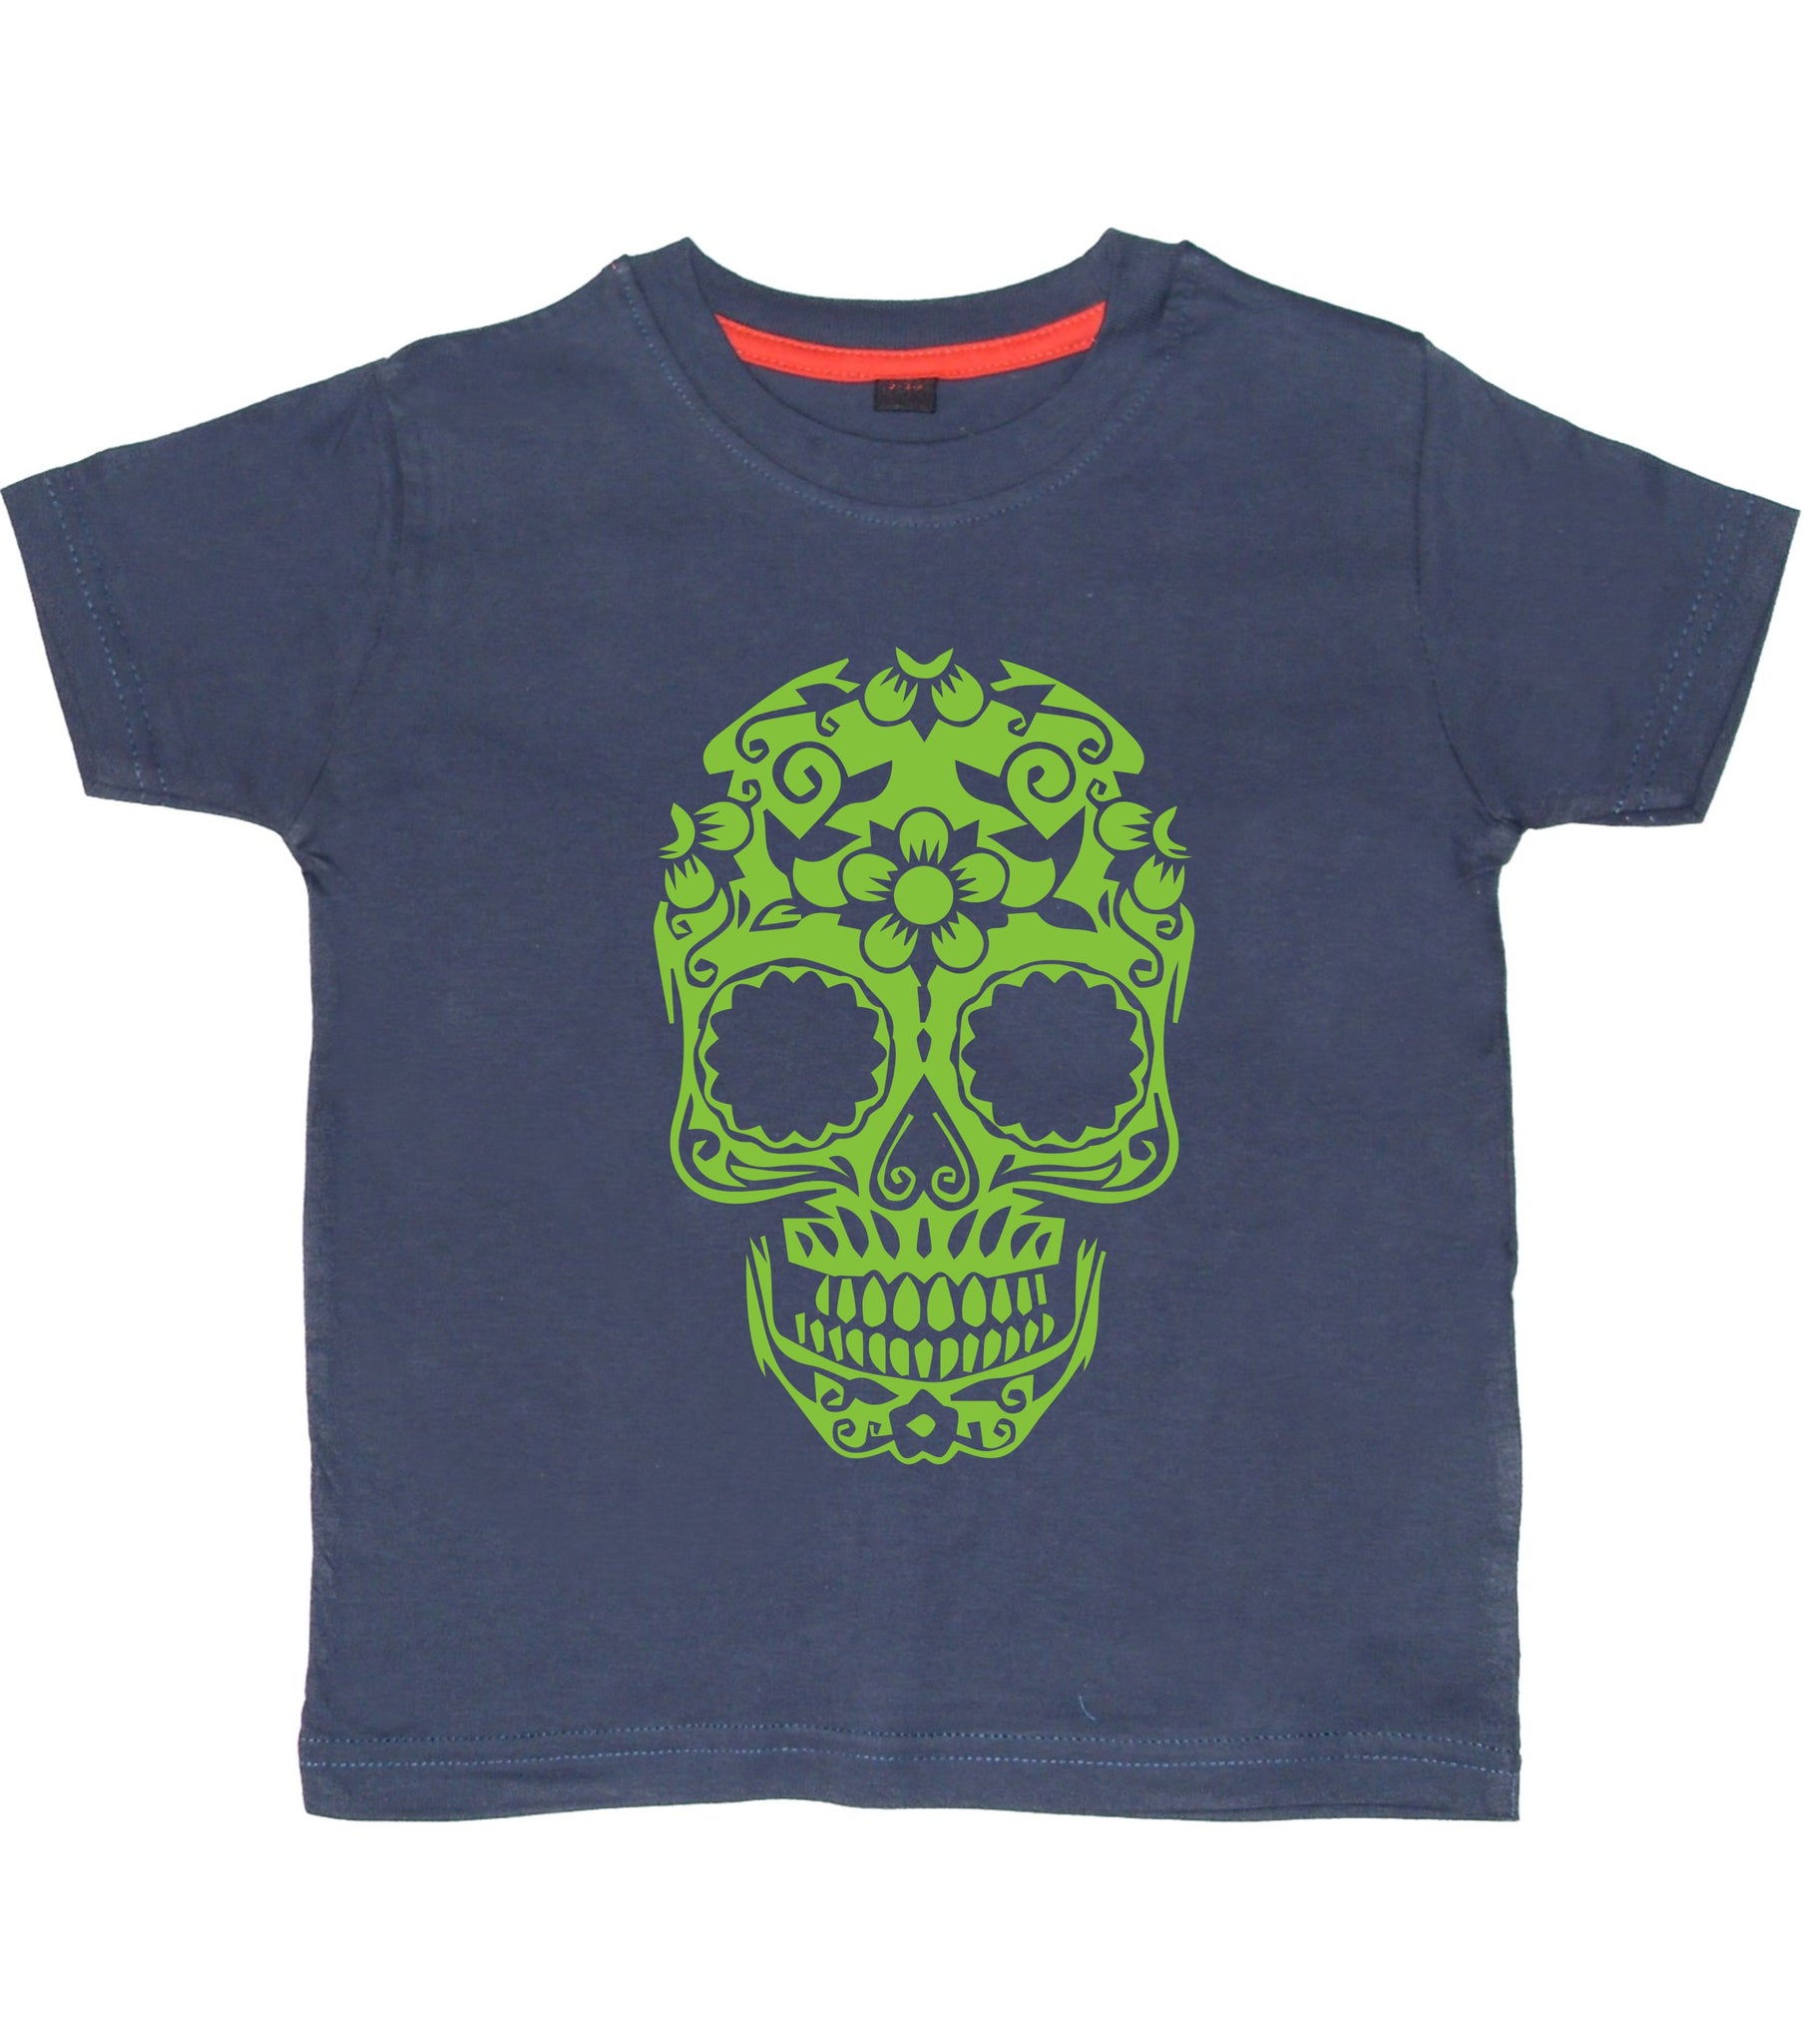 T-shirt enfant Jour des Morts 